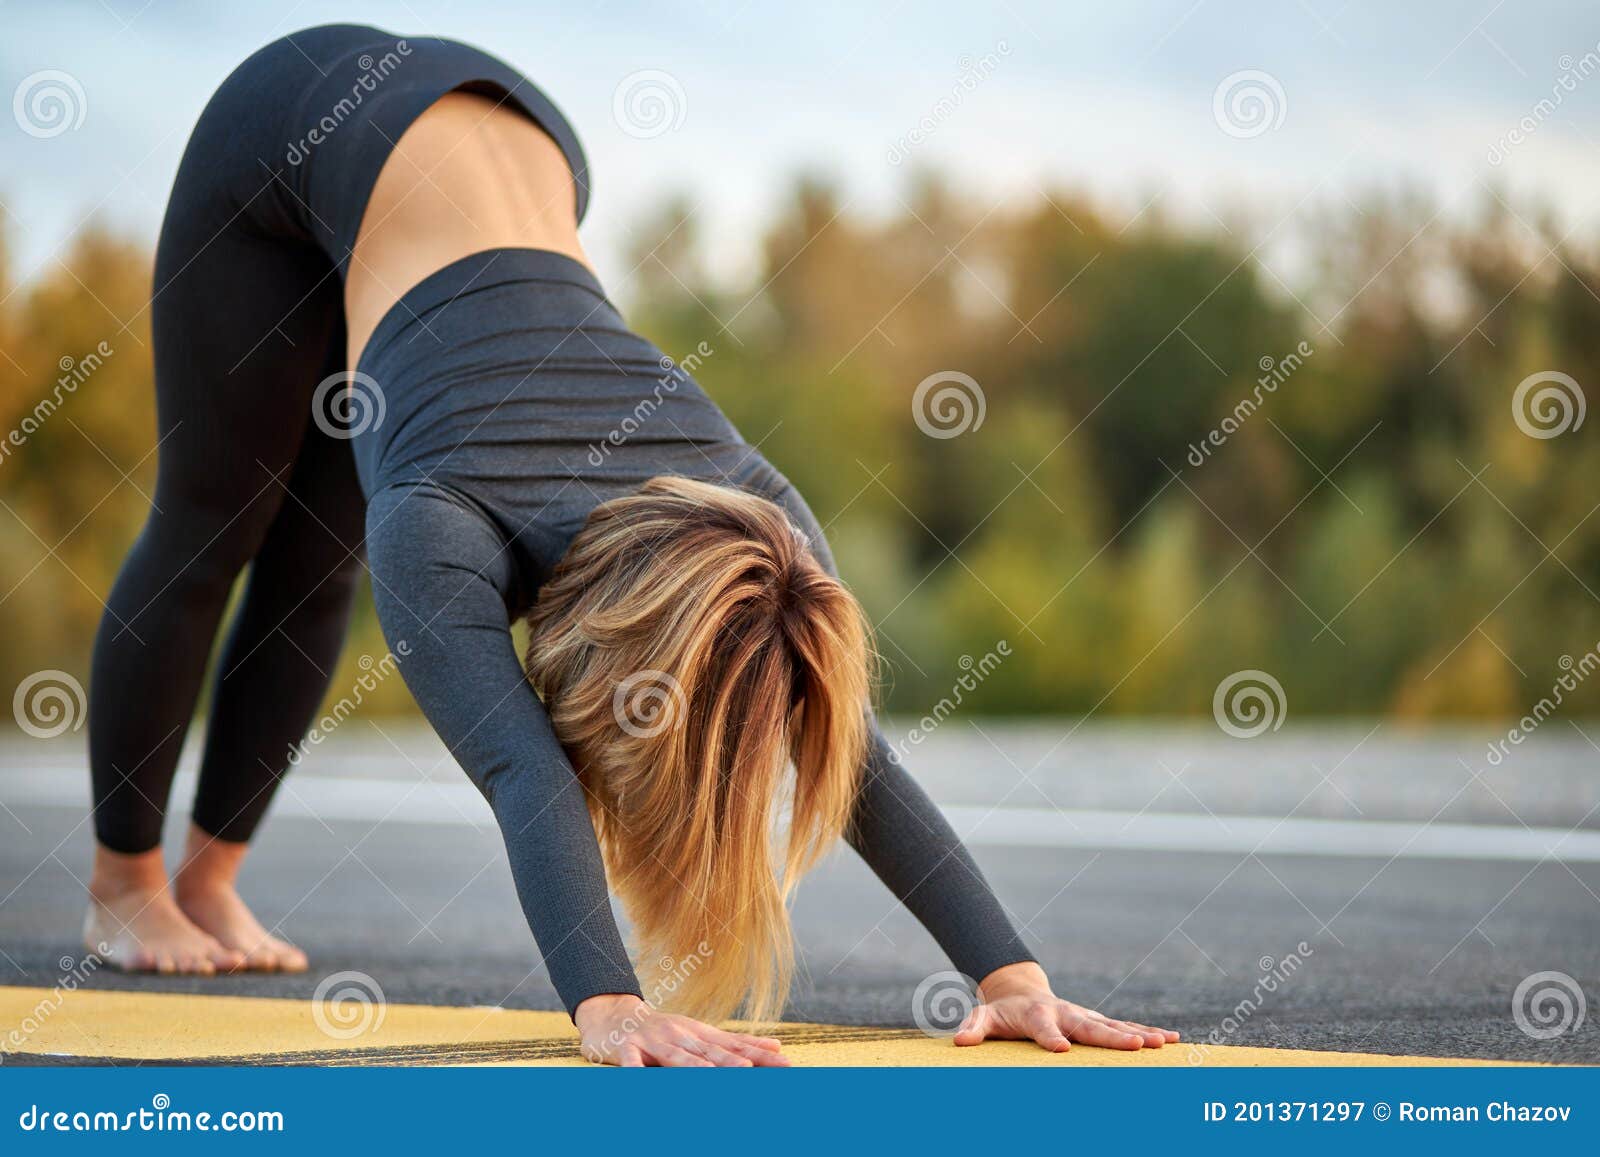 Yoga Girl Ko Jabardasti Xxx Com - Slim Young Woman Do Dog Pose, Practice Yoga Stock Image - Image of action,  athletic: 201371297